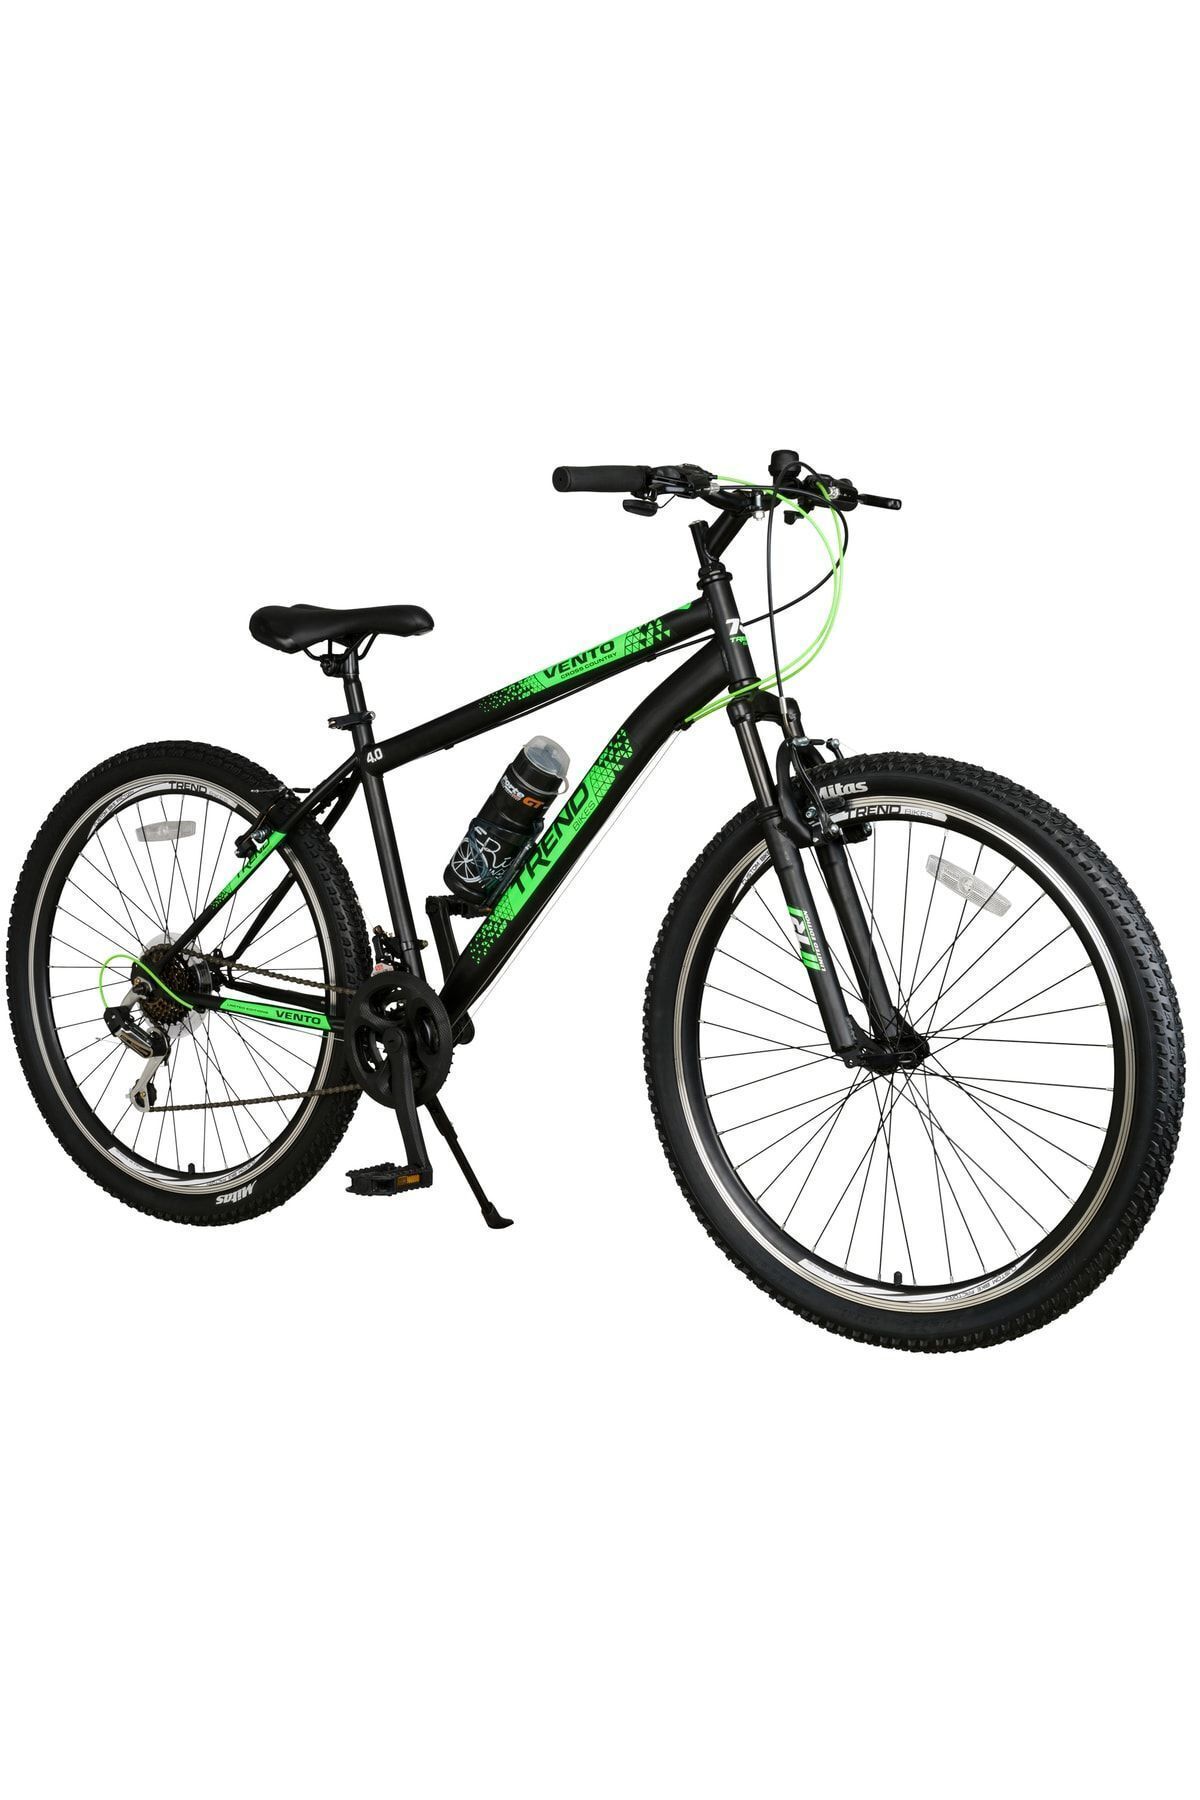 TRENDBIKE Vento 27,5 Jant Önden Amortisörlü Bisiklet 21 Otomatik Vites Dağ Bisikleti Siyahneon Yeşil